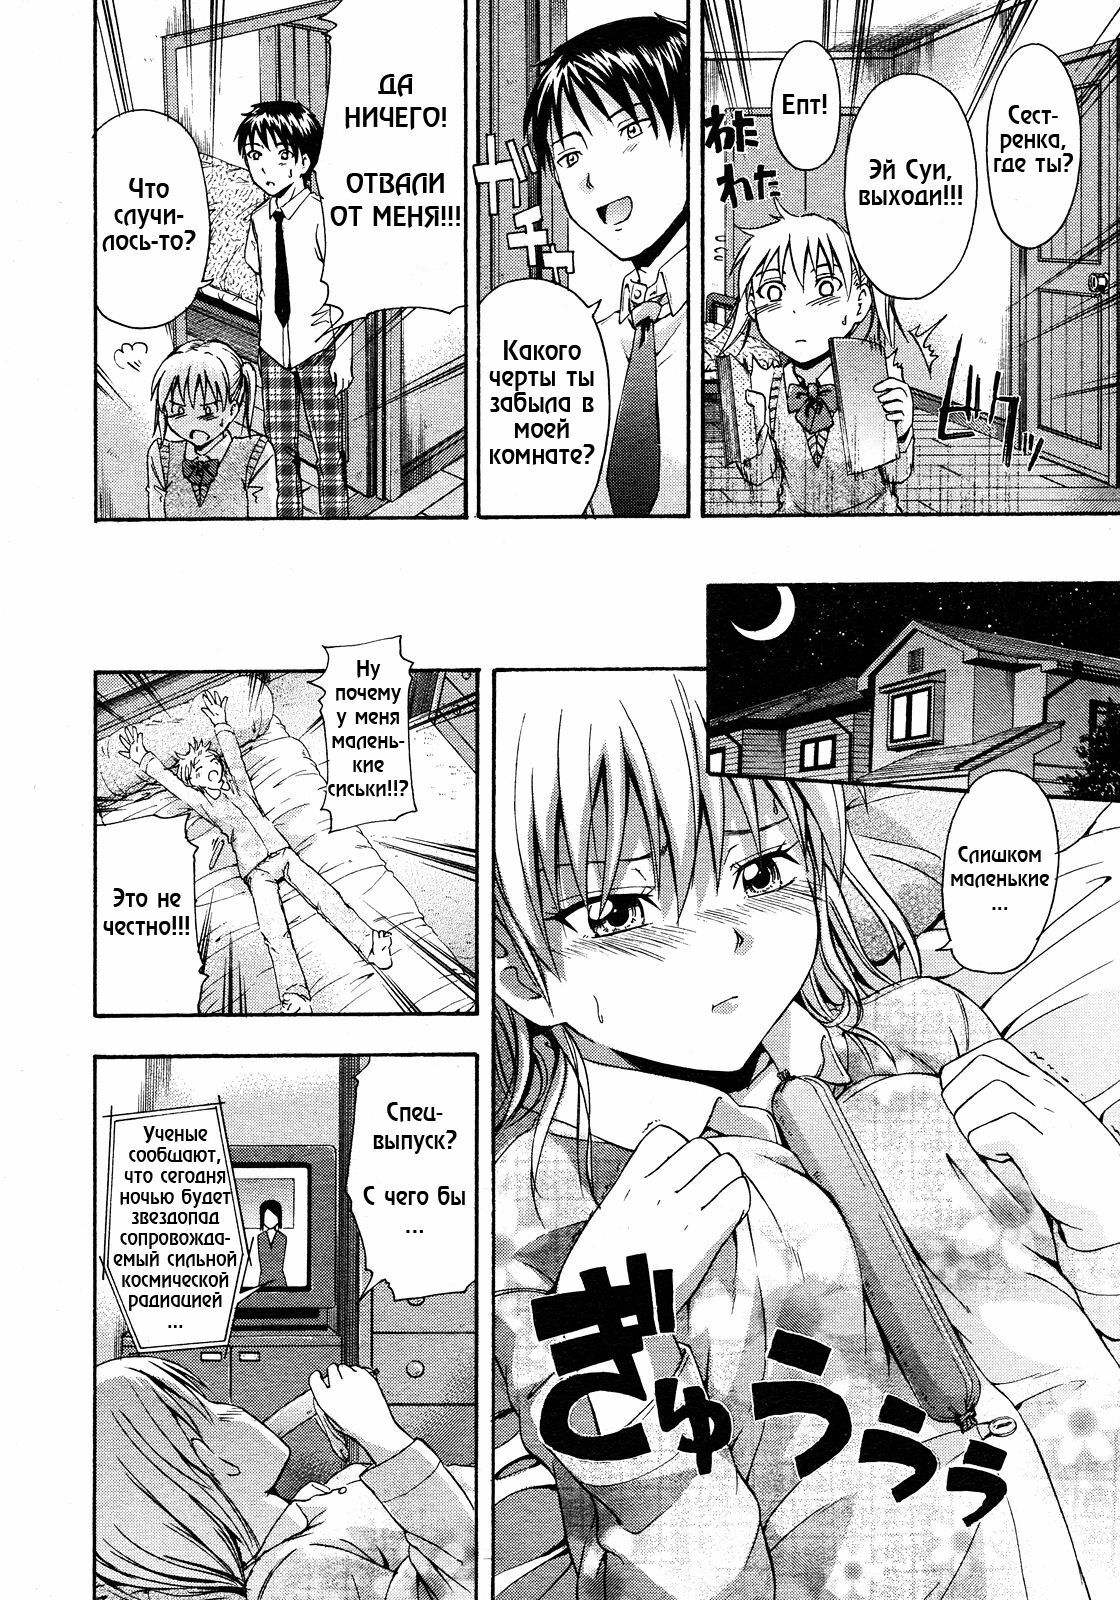 [Tsuruta Bungaku] Chichi no negai wo [RUS] page 2 full